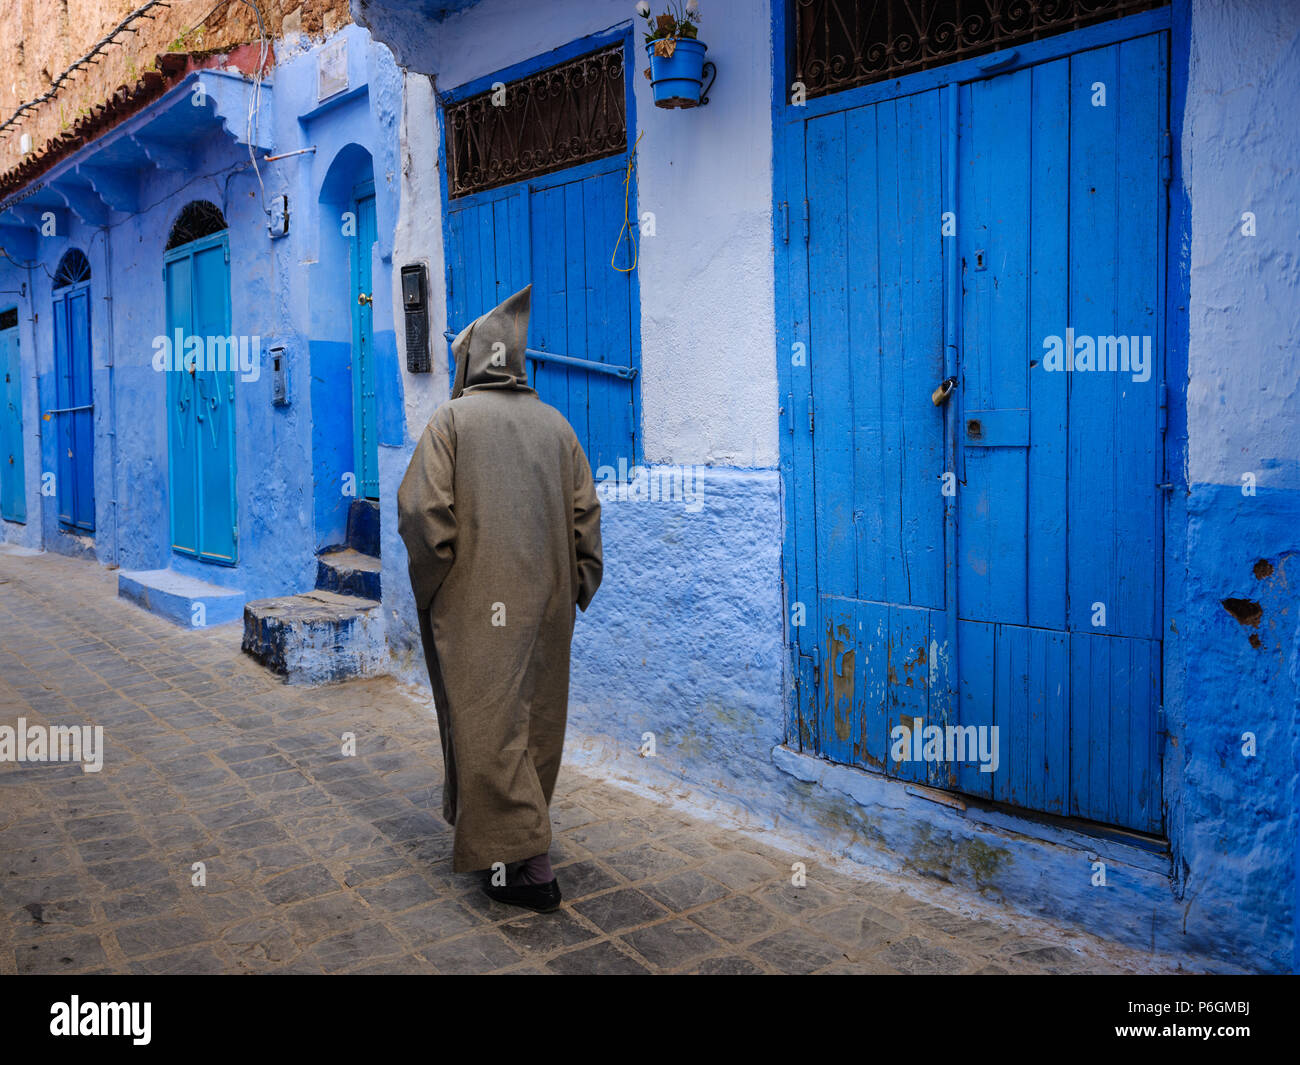 CHEFCHAOUEN, MAROC - CIRCA AVRIL 2017 : marocaine homme marchant dans les rues de Chefchaouen portant une djellaba traditionnelle Banque D'Images